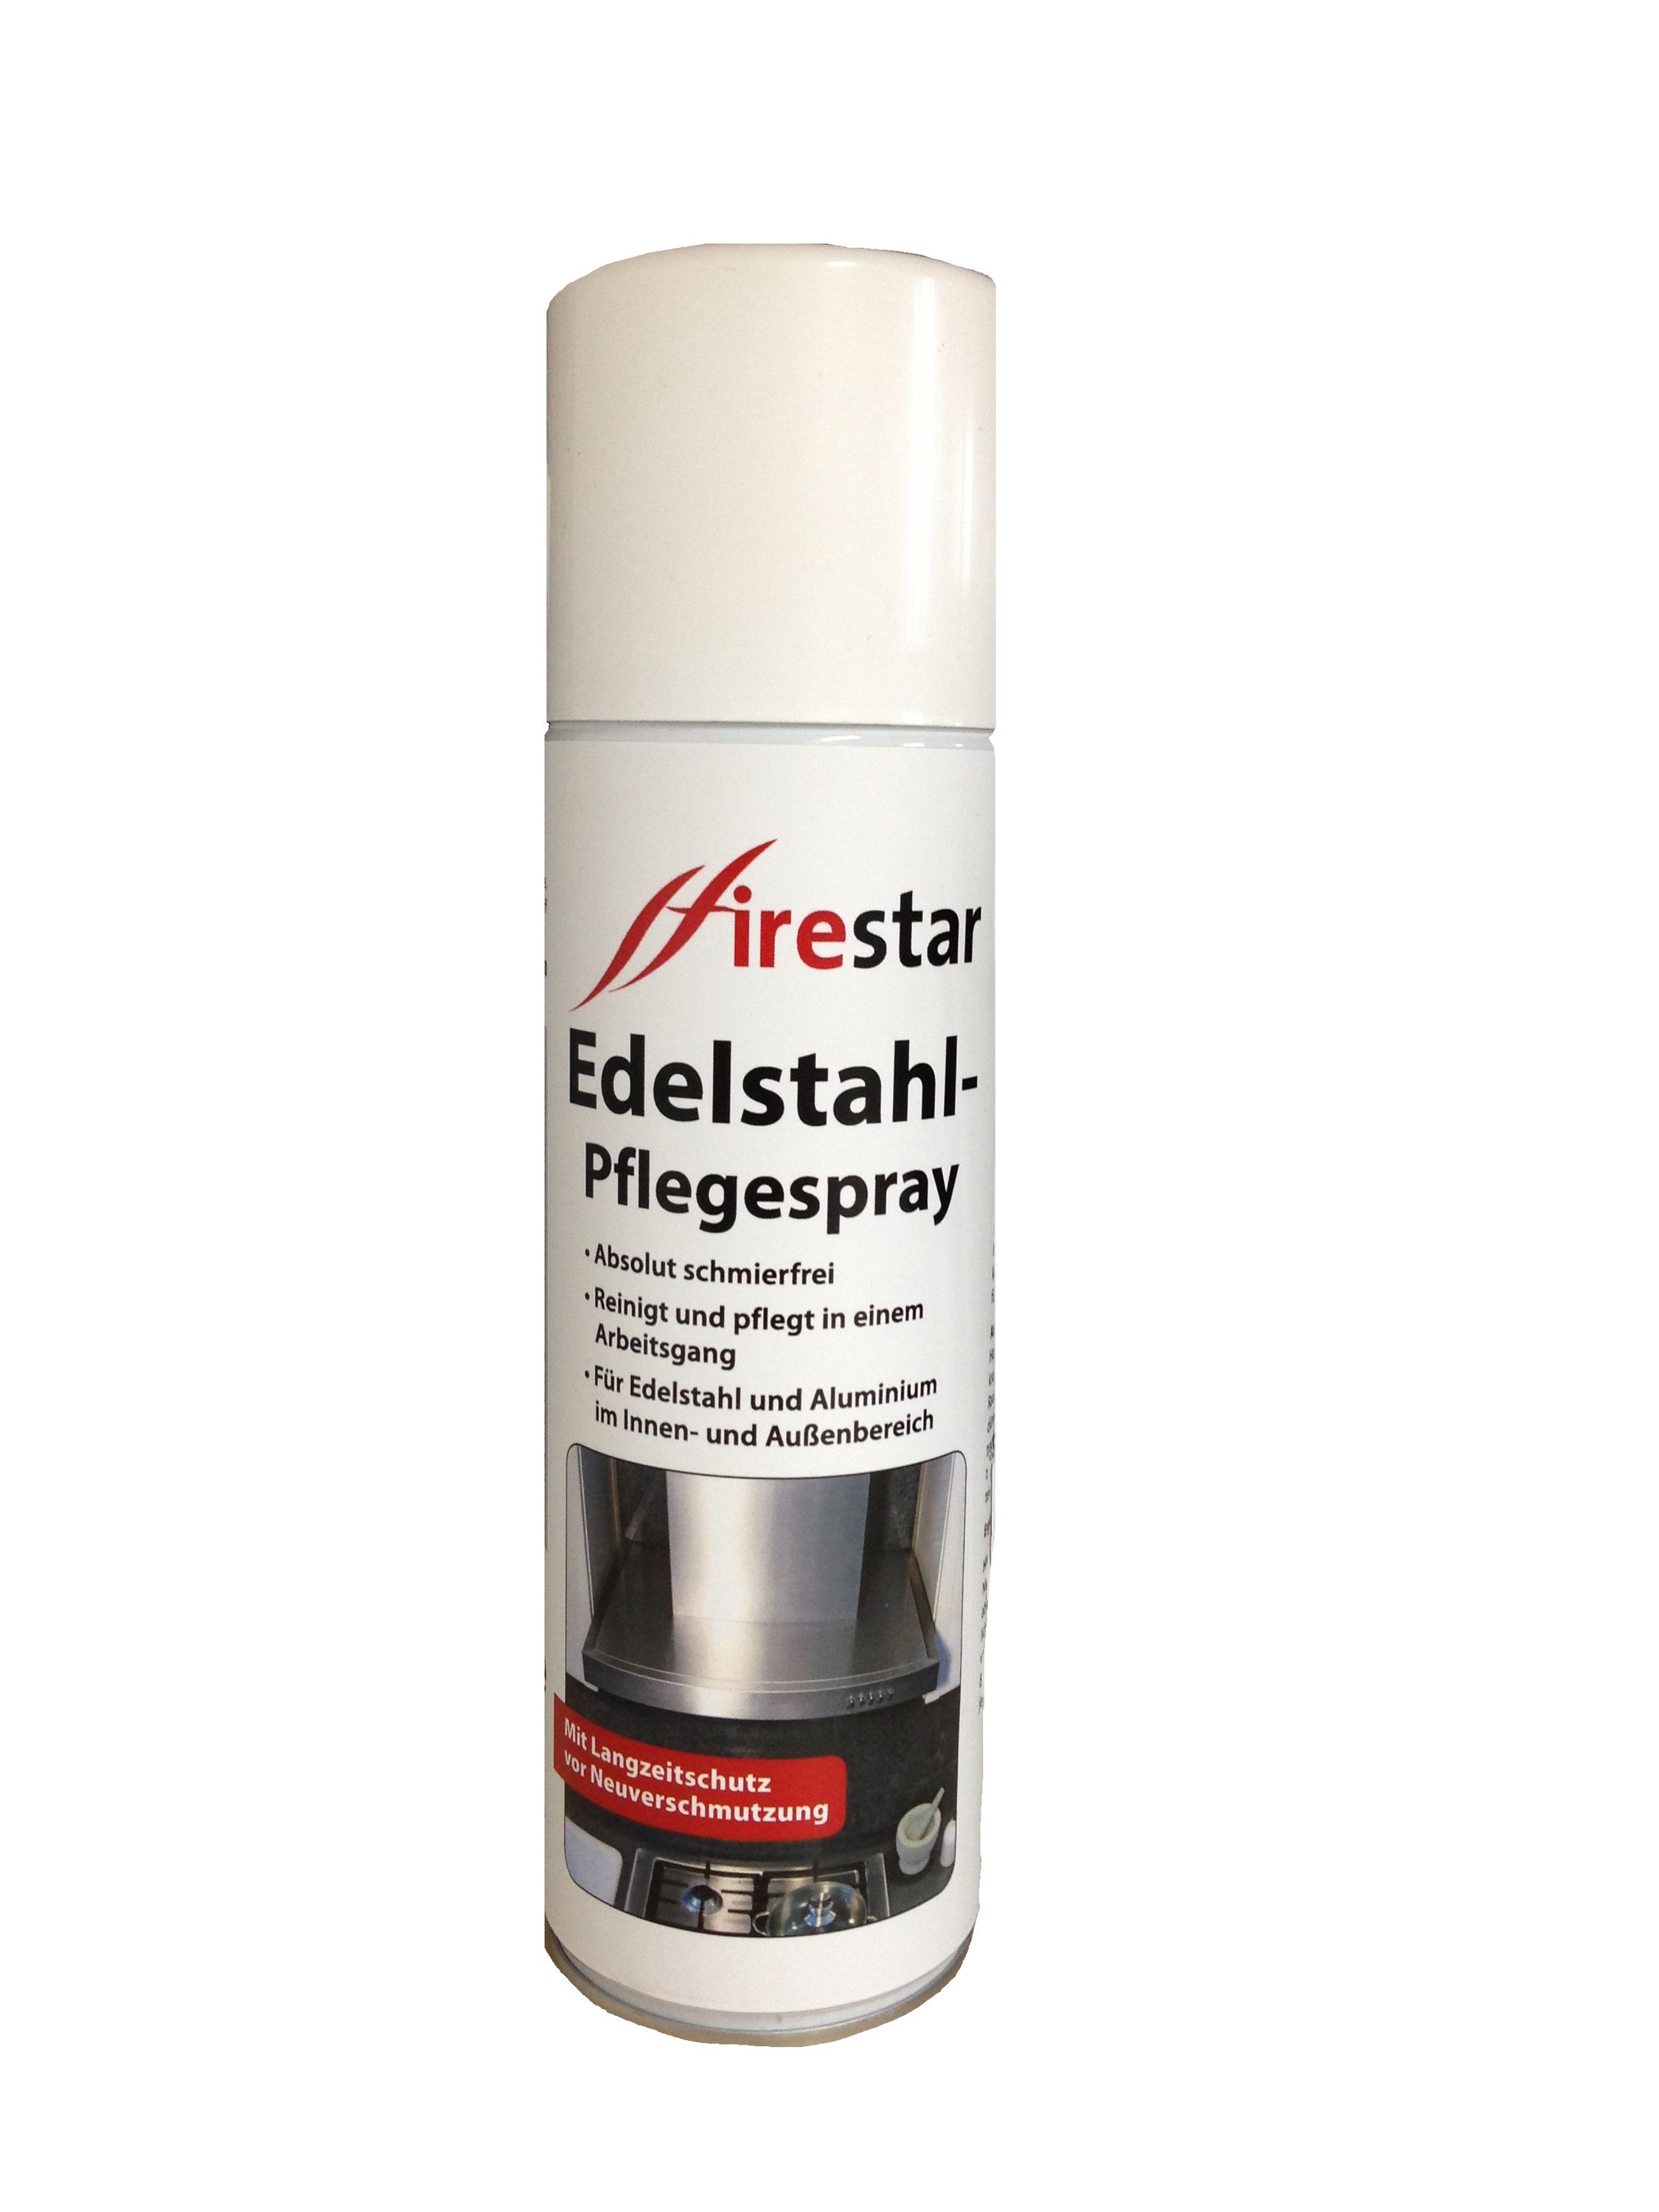 Firestar Edelstahl Pflegespray 300 ml